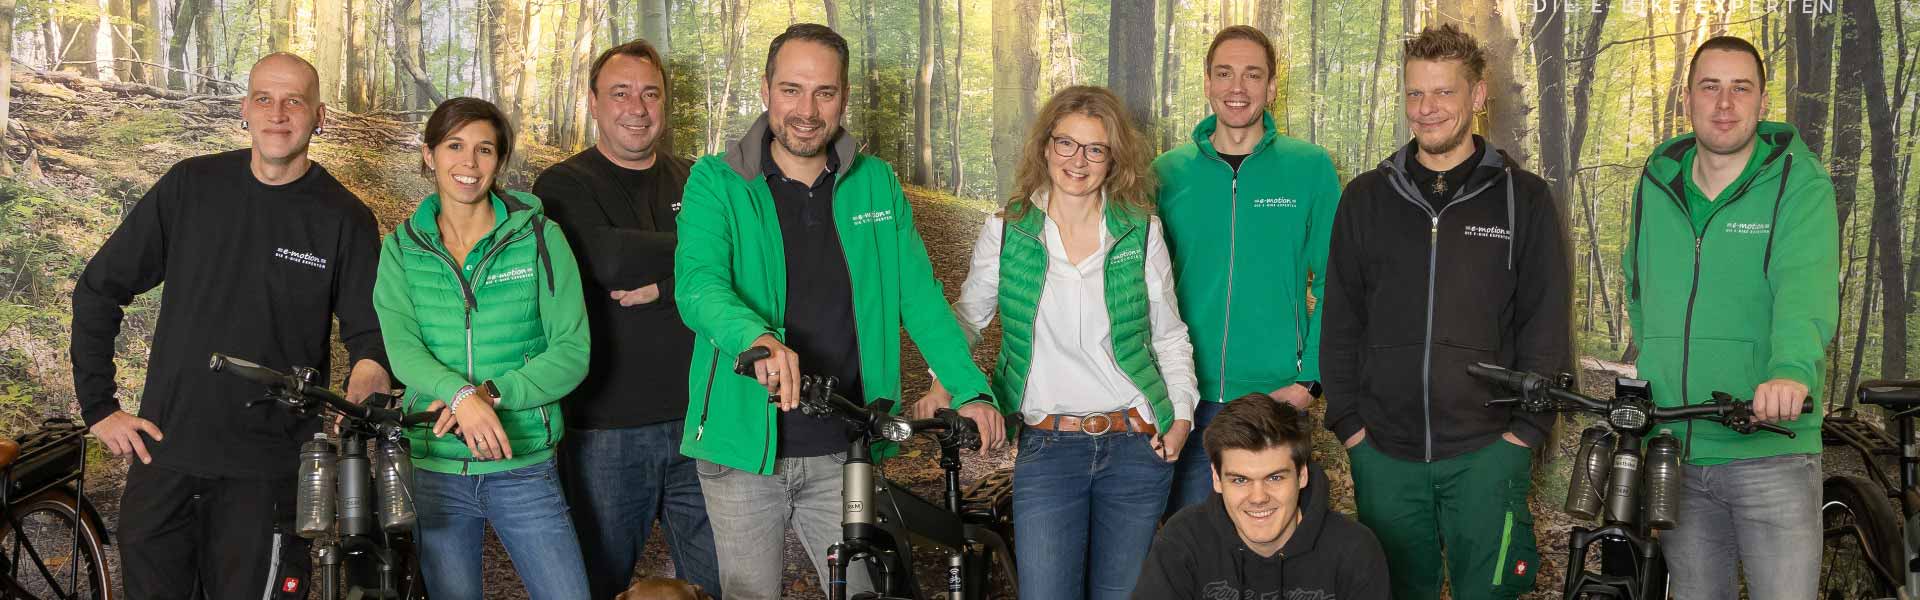 Dein Team der e-motion e-Bike Welt Nordheide